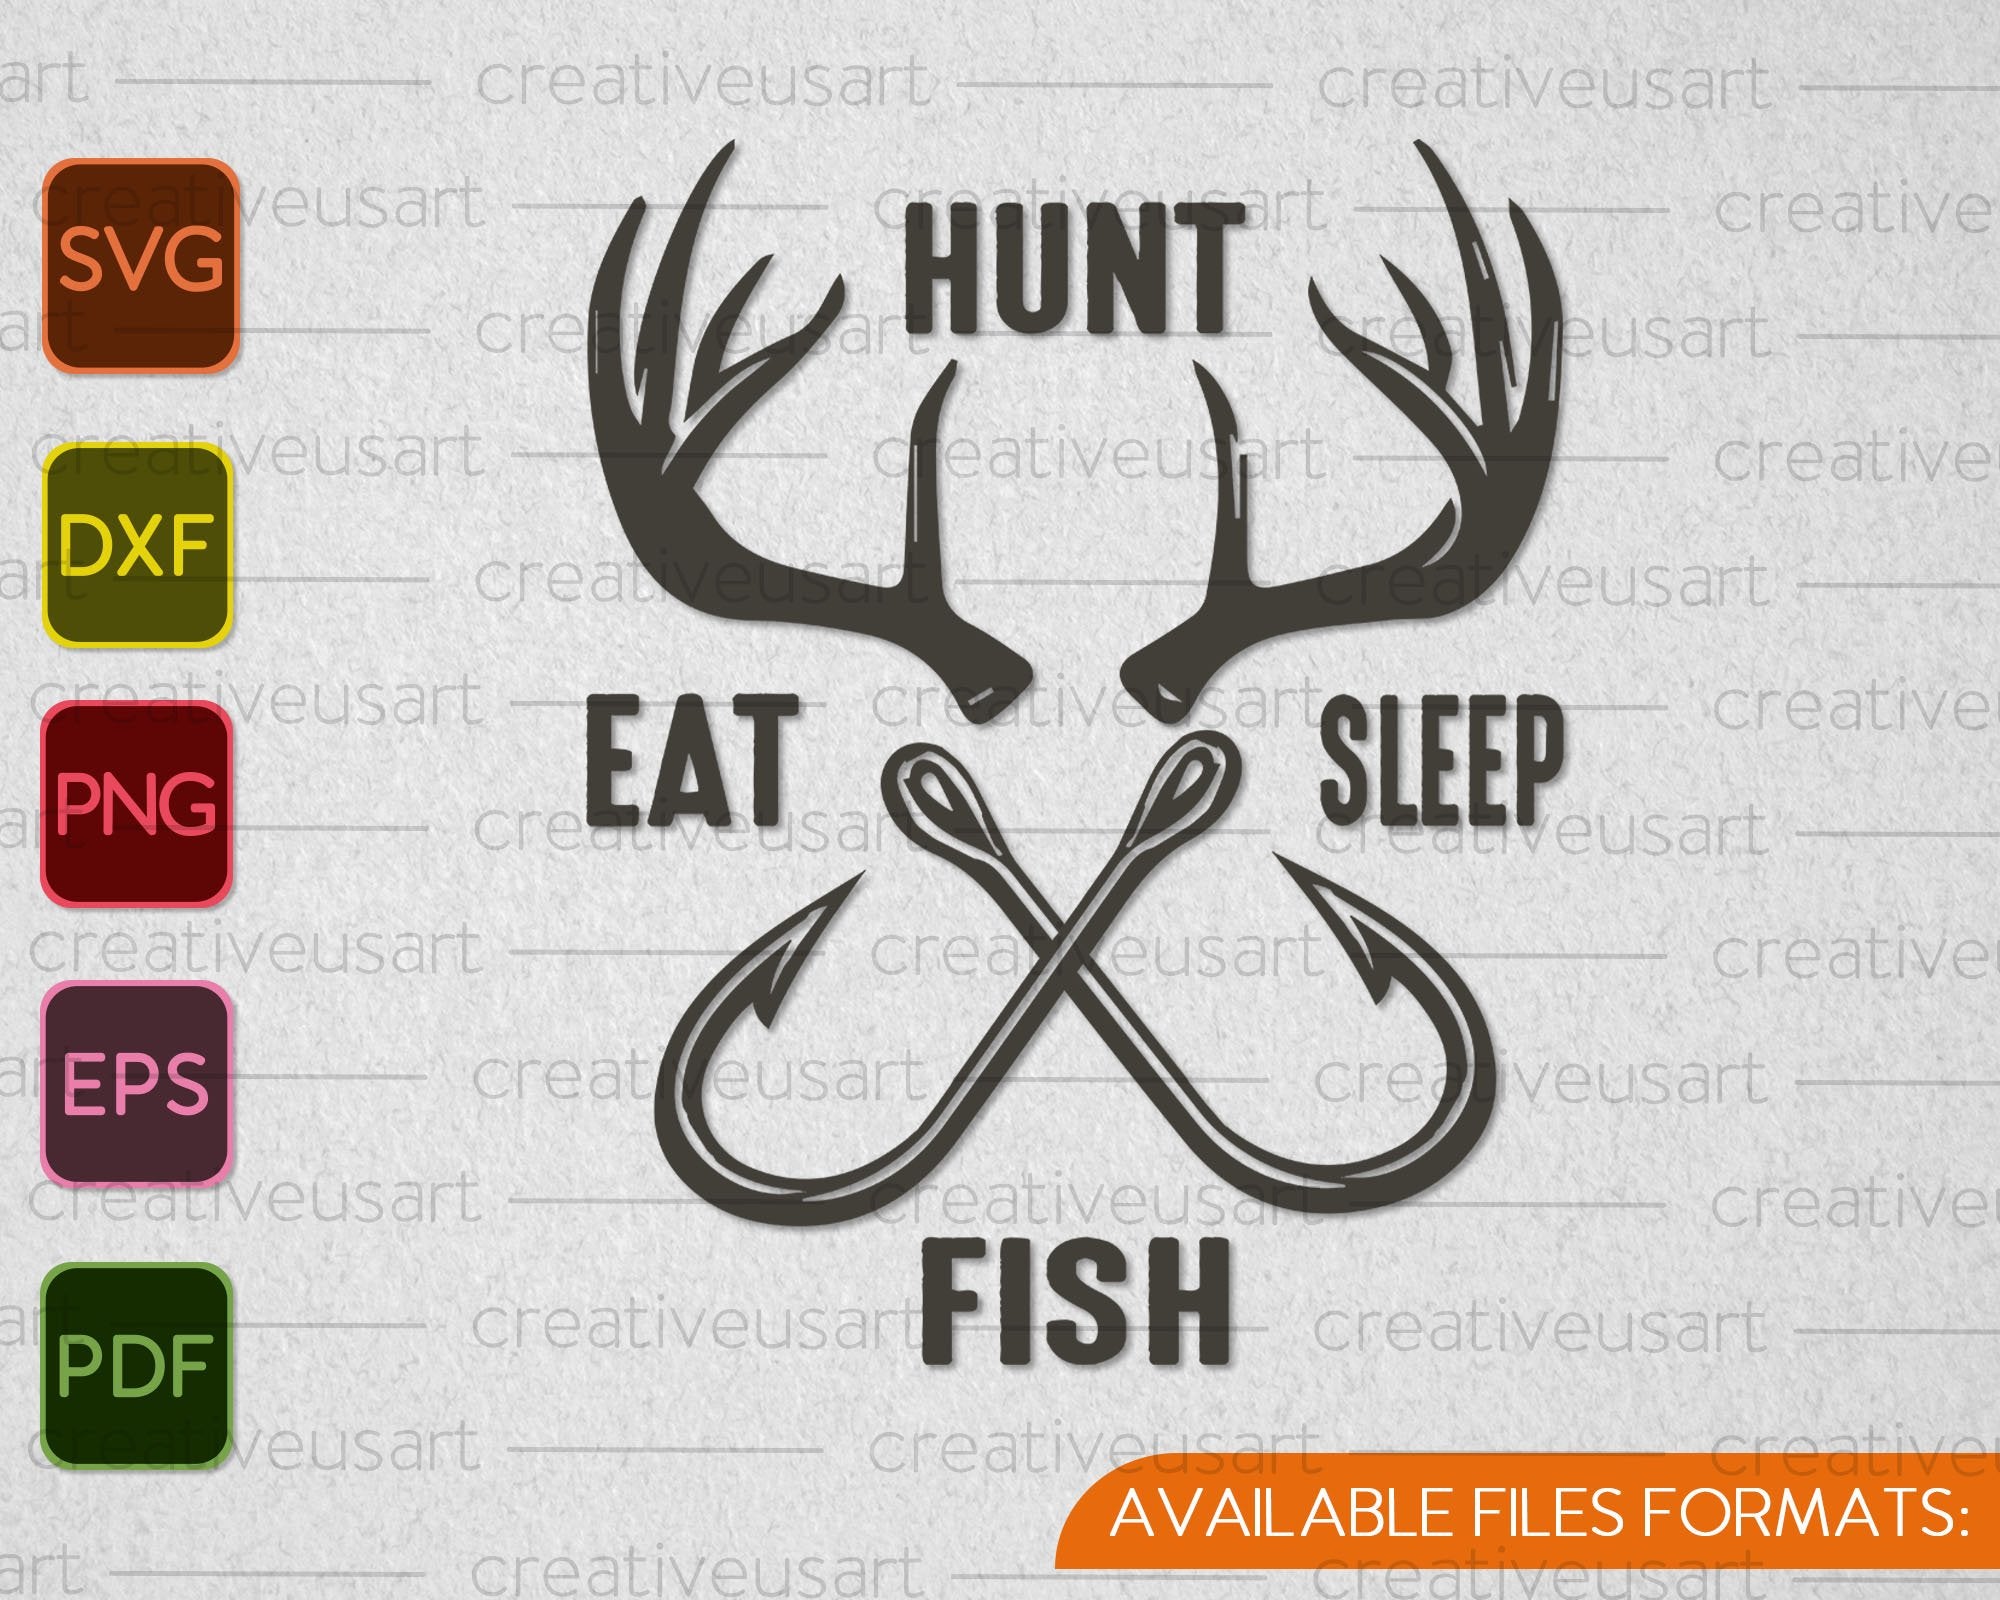 Fishing, Hunting, Hunt and Fish SVG PNG Files – creativeusarts